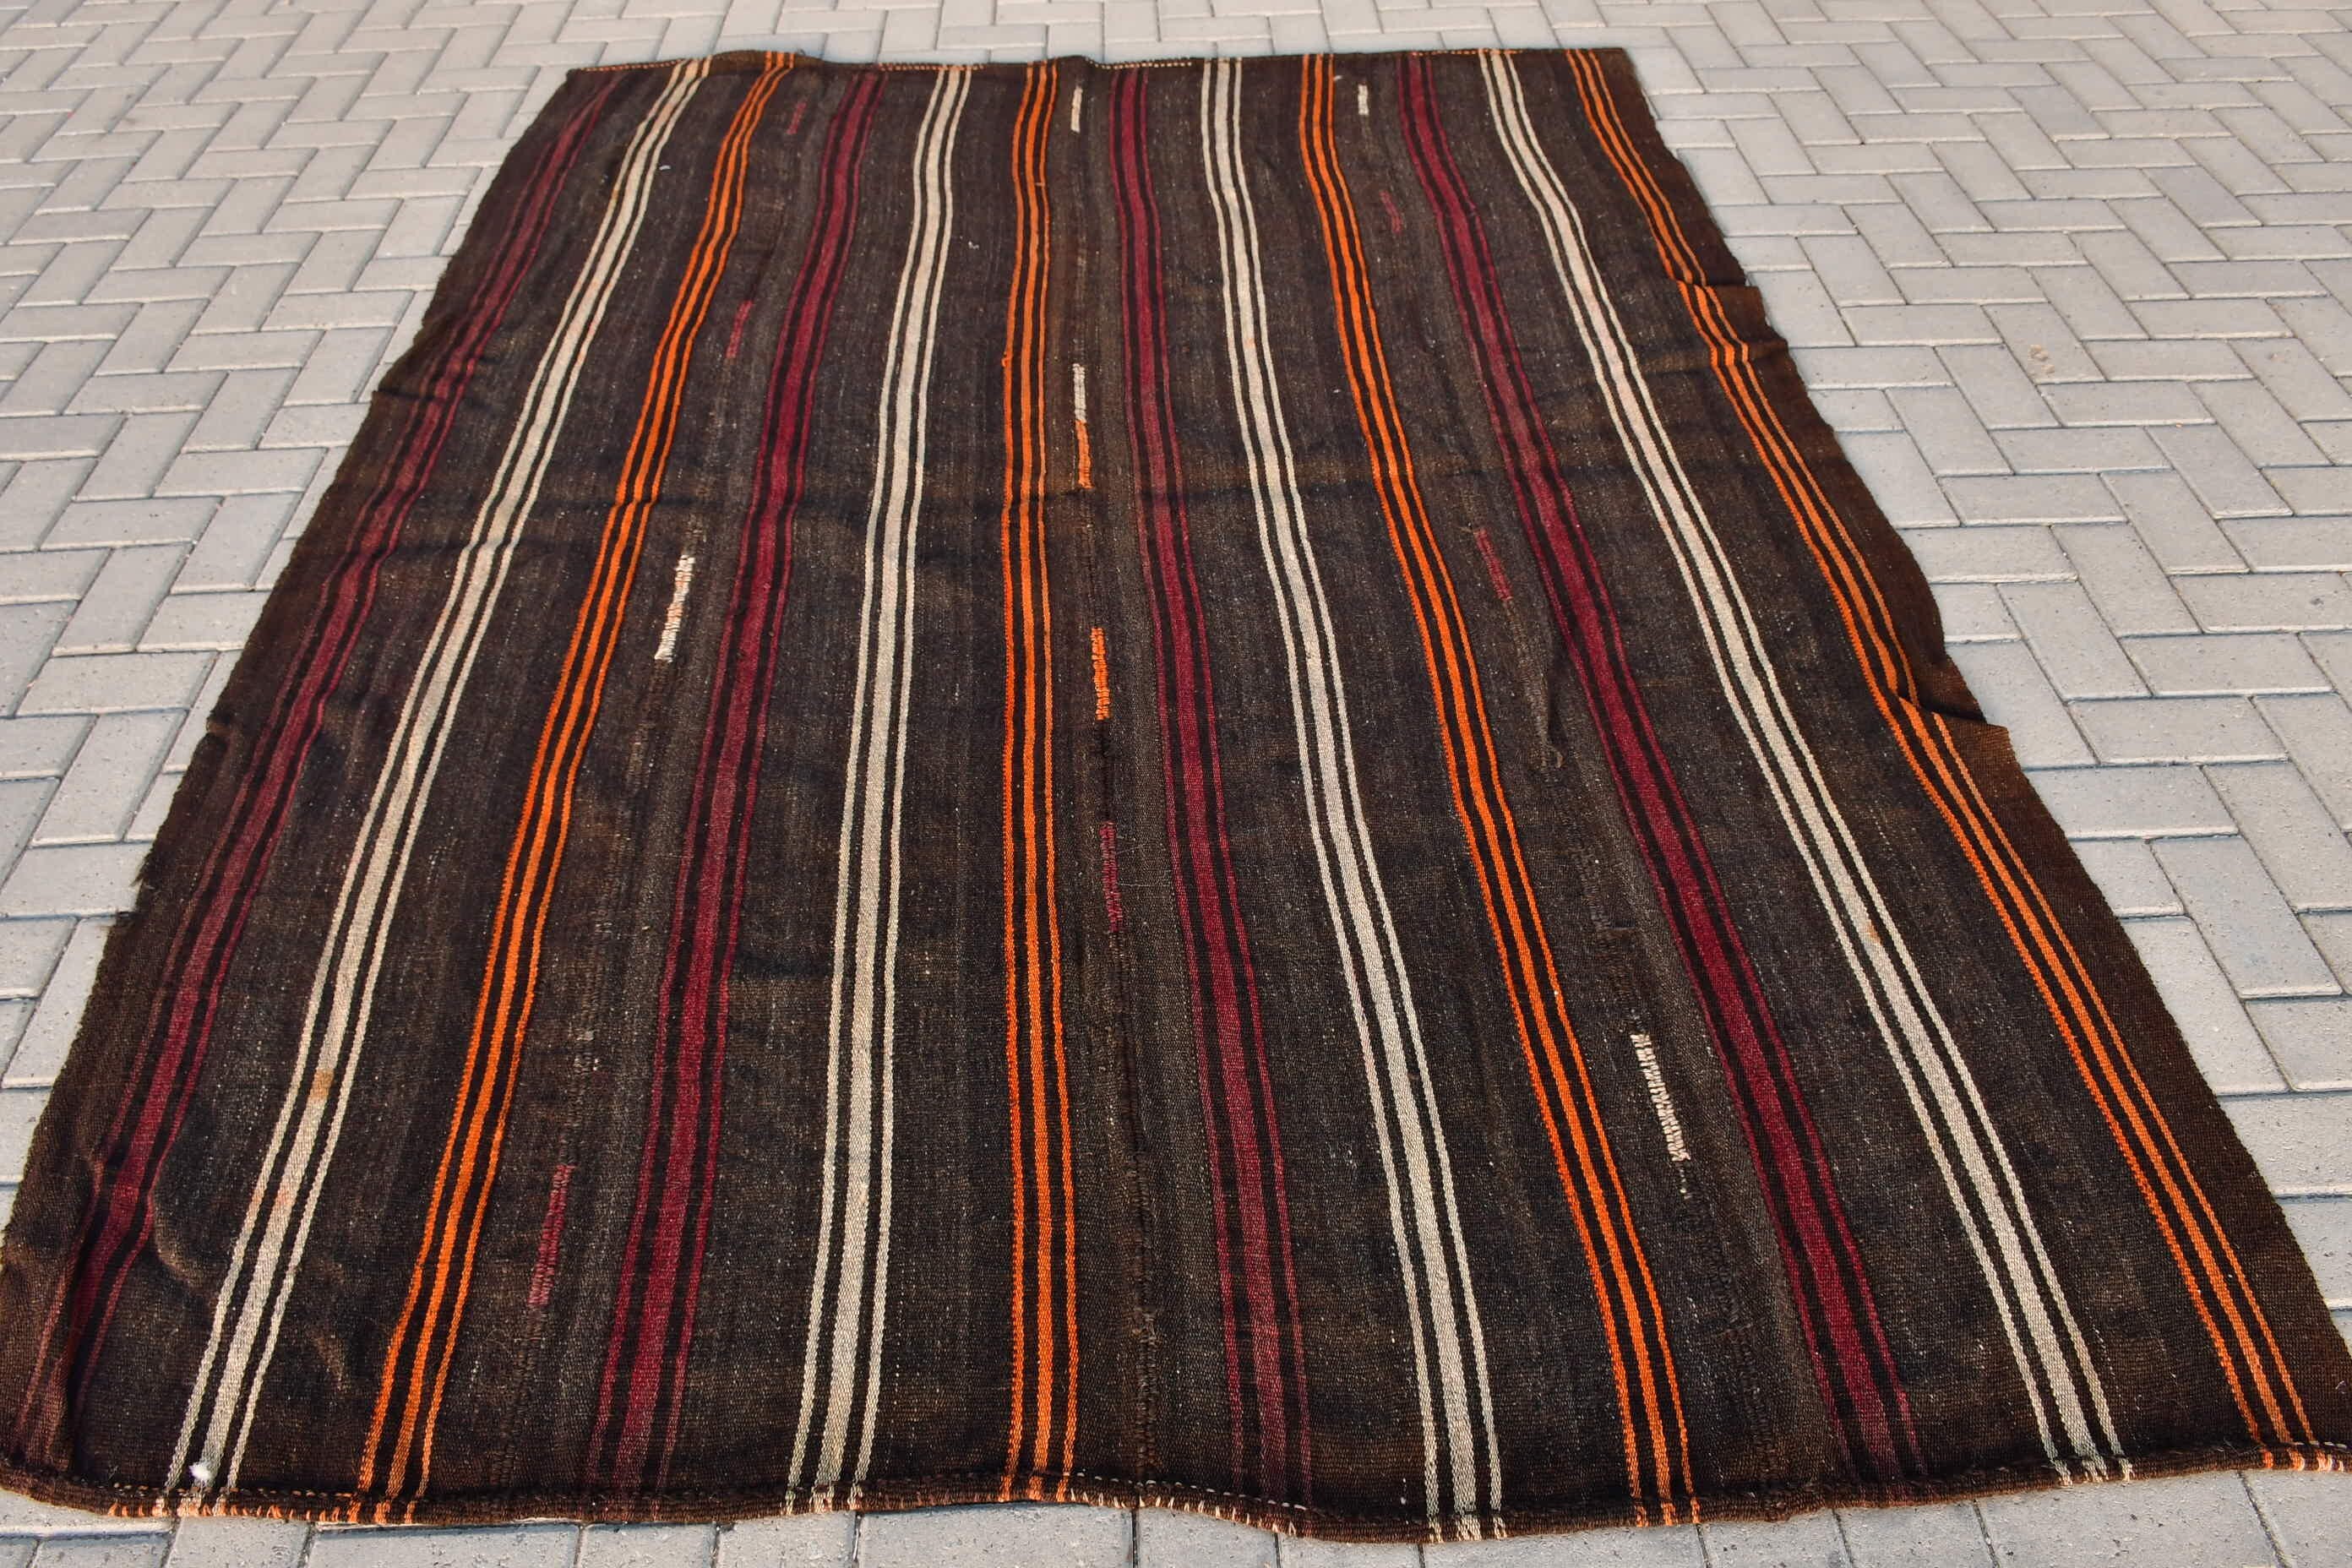 6.2x8.4 ft Large Rugs, Brown Oriental Rug, Kilim, Vintage Rugs, Antique Rugs, Art Rug, Cool Rug, Salon Rug, Dining Room Rugs, Turkish Rugs